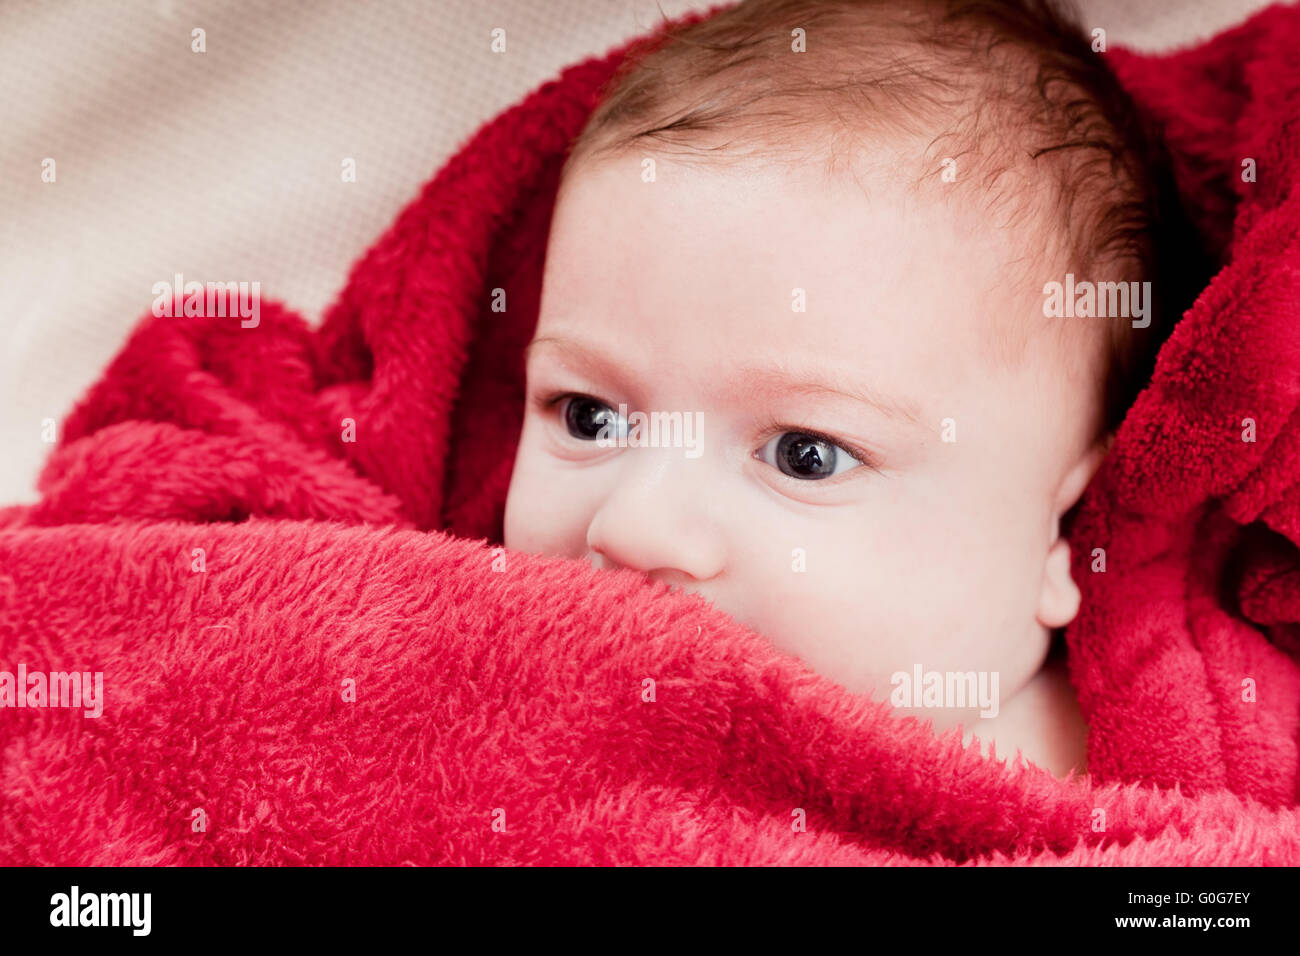 Beau 3 mois bébé couché sur un lit recouvert d'une couverture rouge. Portrait doux Banque D'Images